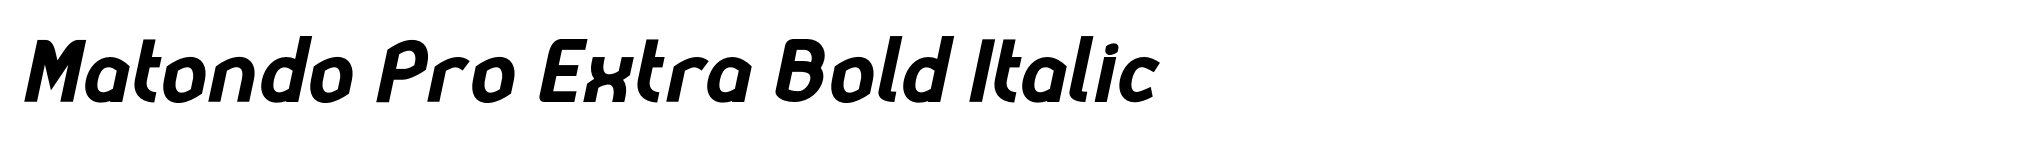 Matondo Pro Extra Bold Italic image